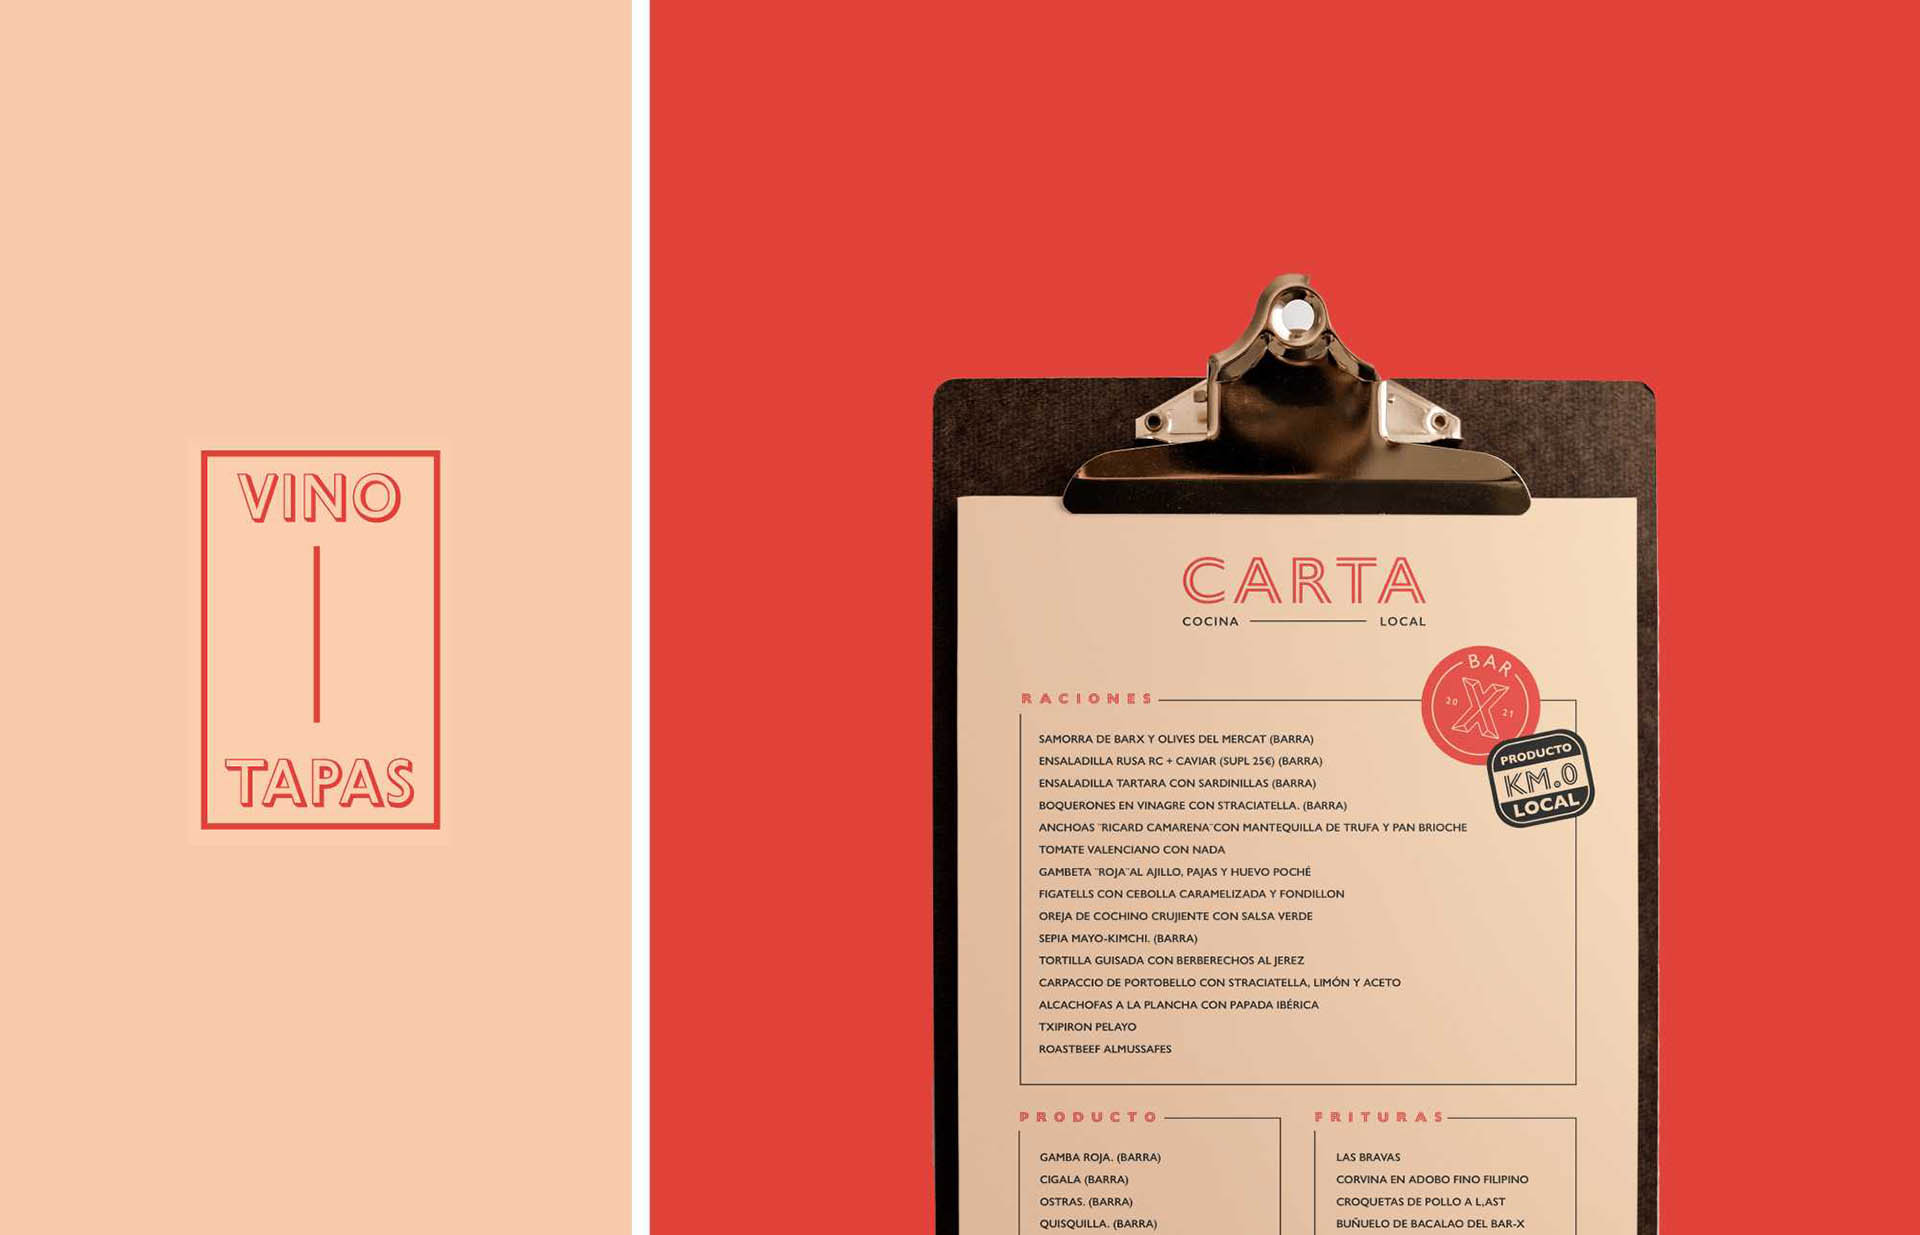 Diseño de identidad e interior para el restaurante Bar X de Ricard Camarena en Valencia